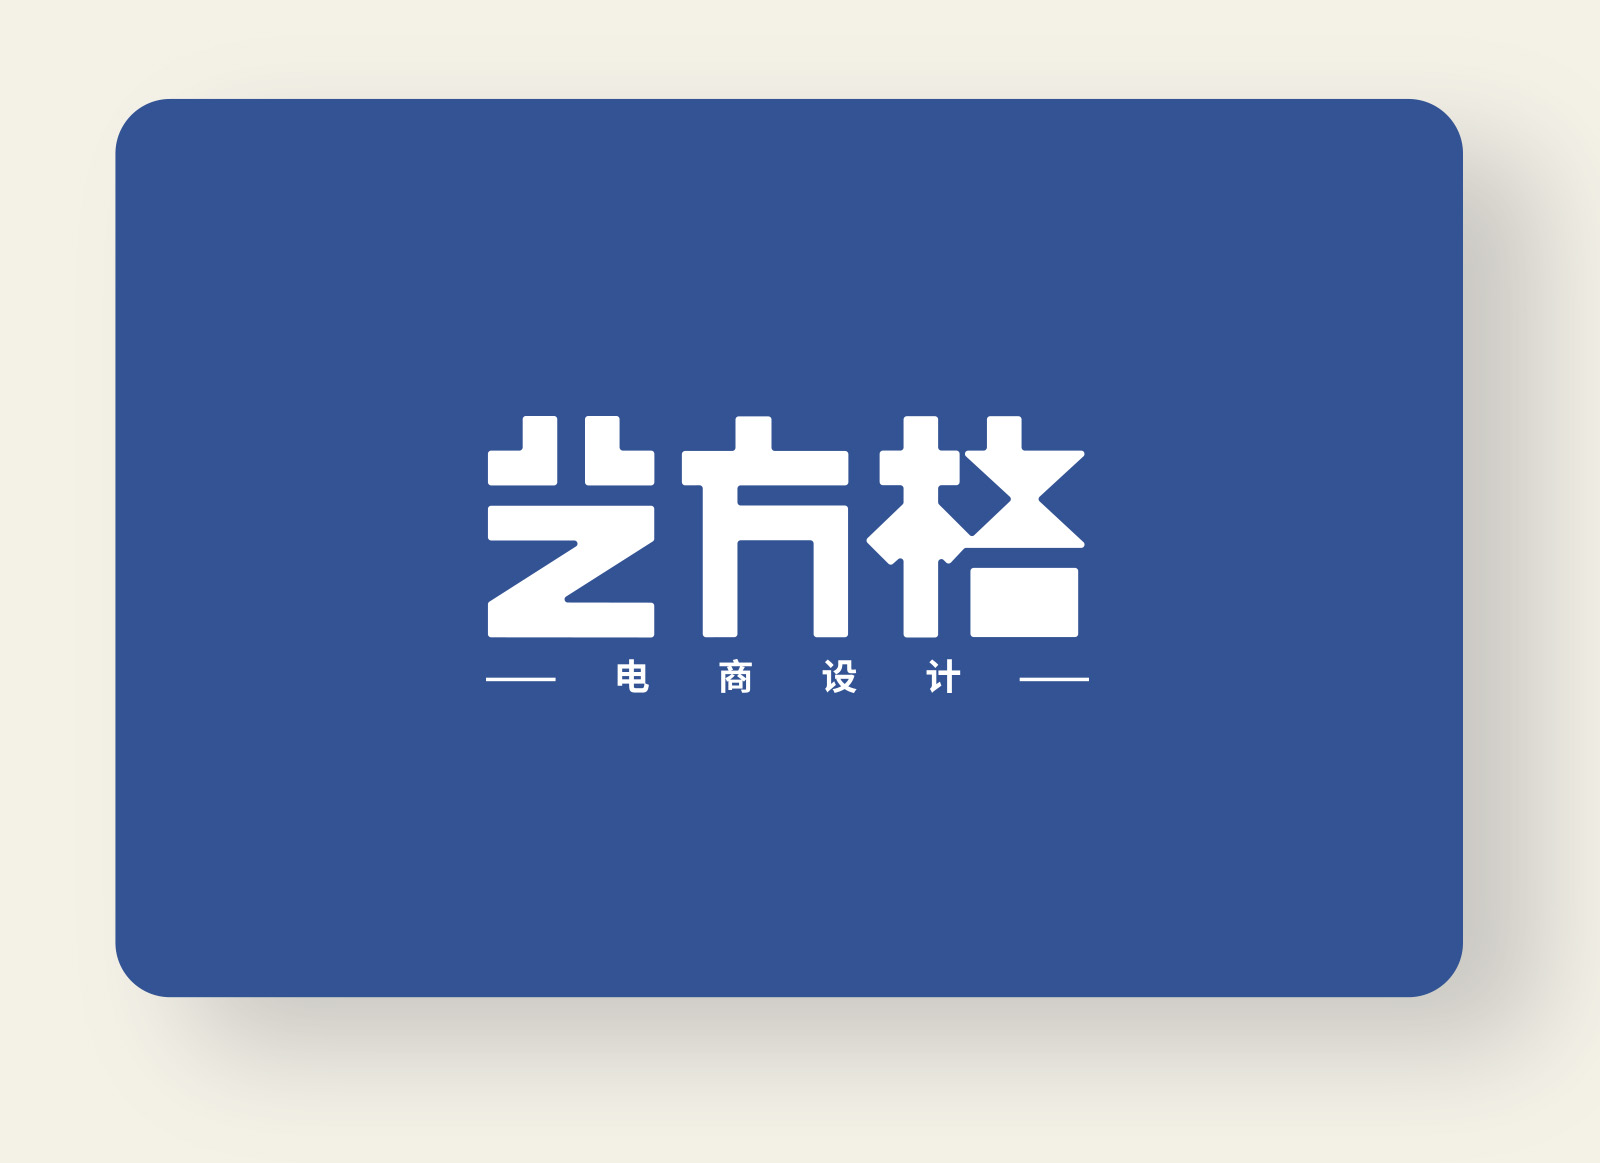 艺方格电商设计logo